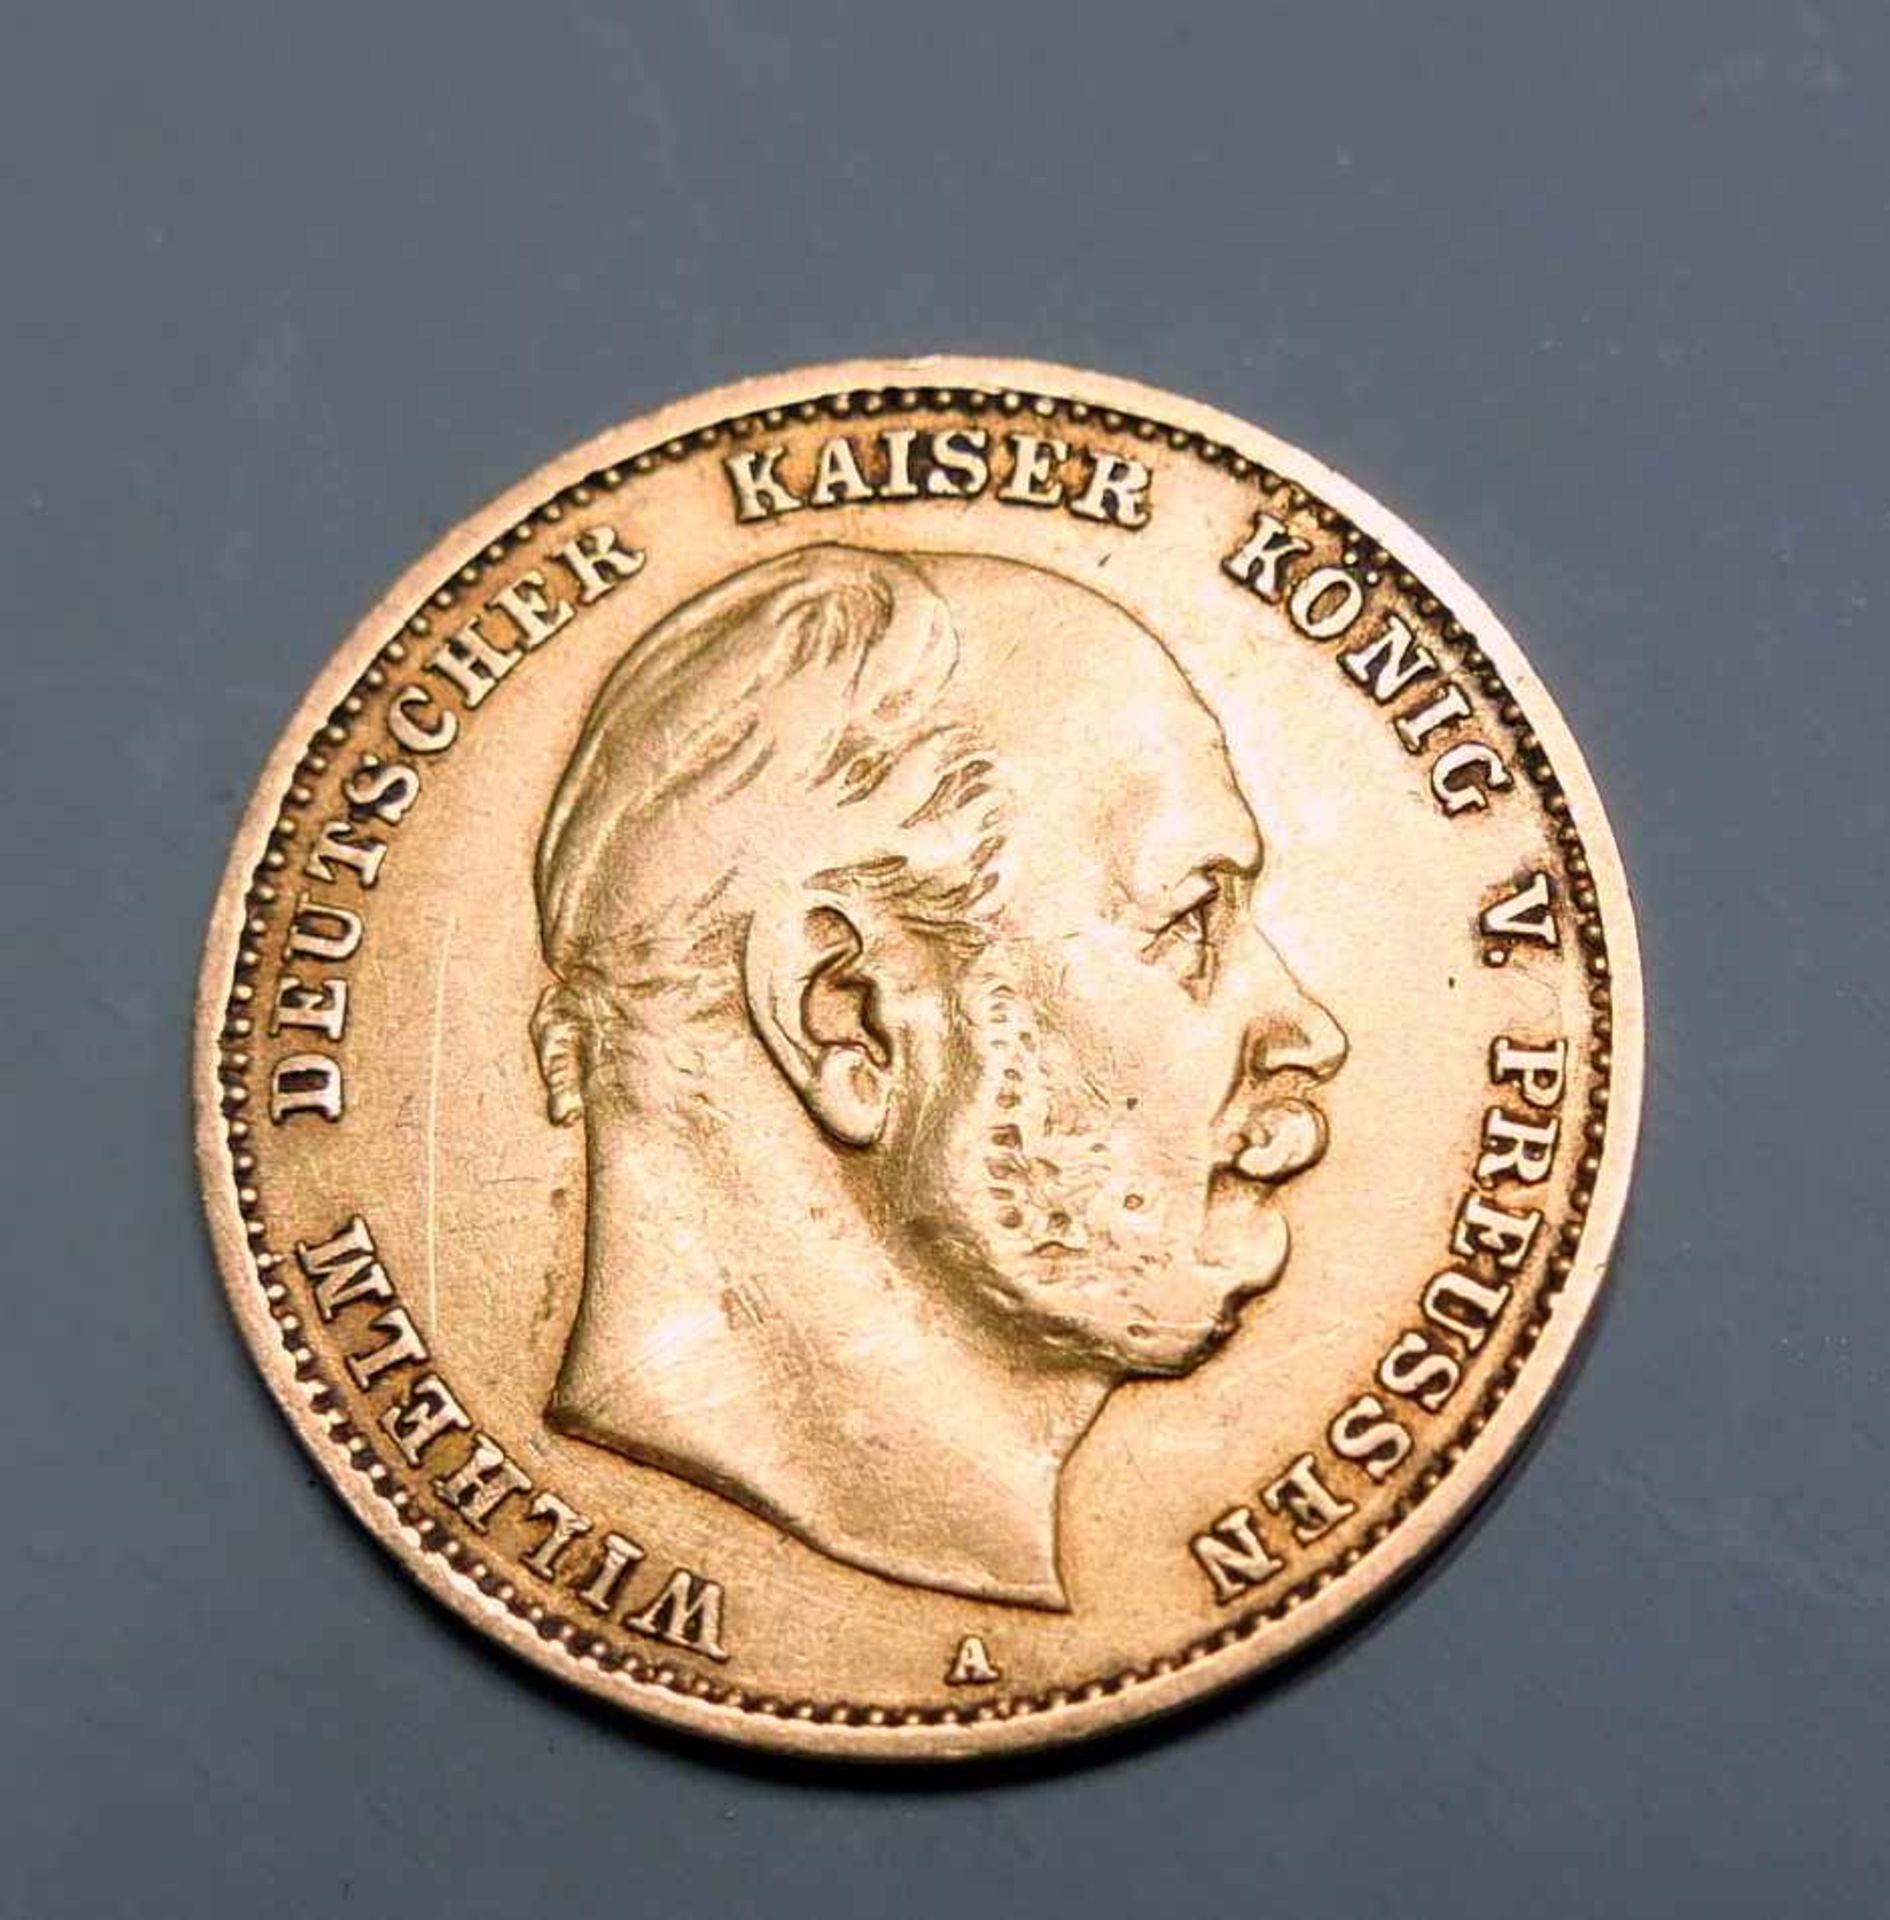 Goldmünze, 10 ReichsmarkGold. 10 Mark, Wilhelm deutscher Kaiser König v. Preussen. A. Deutschland,